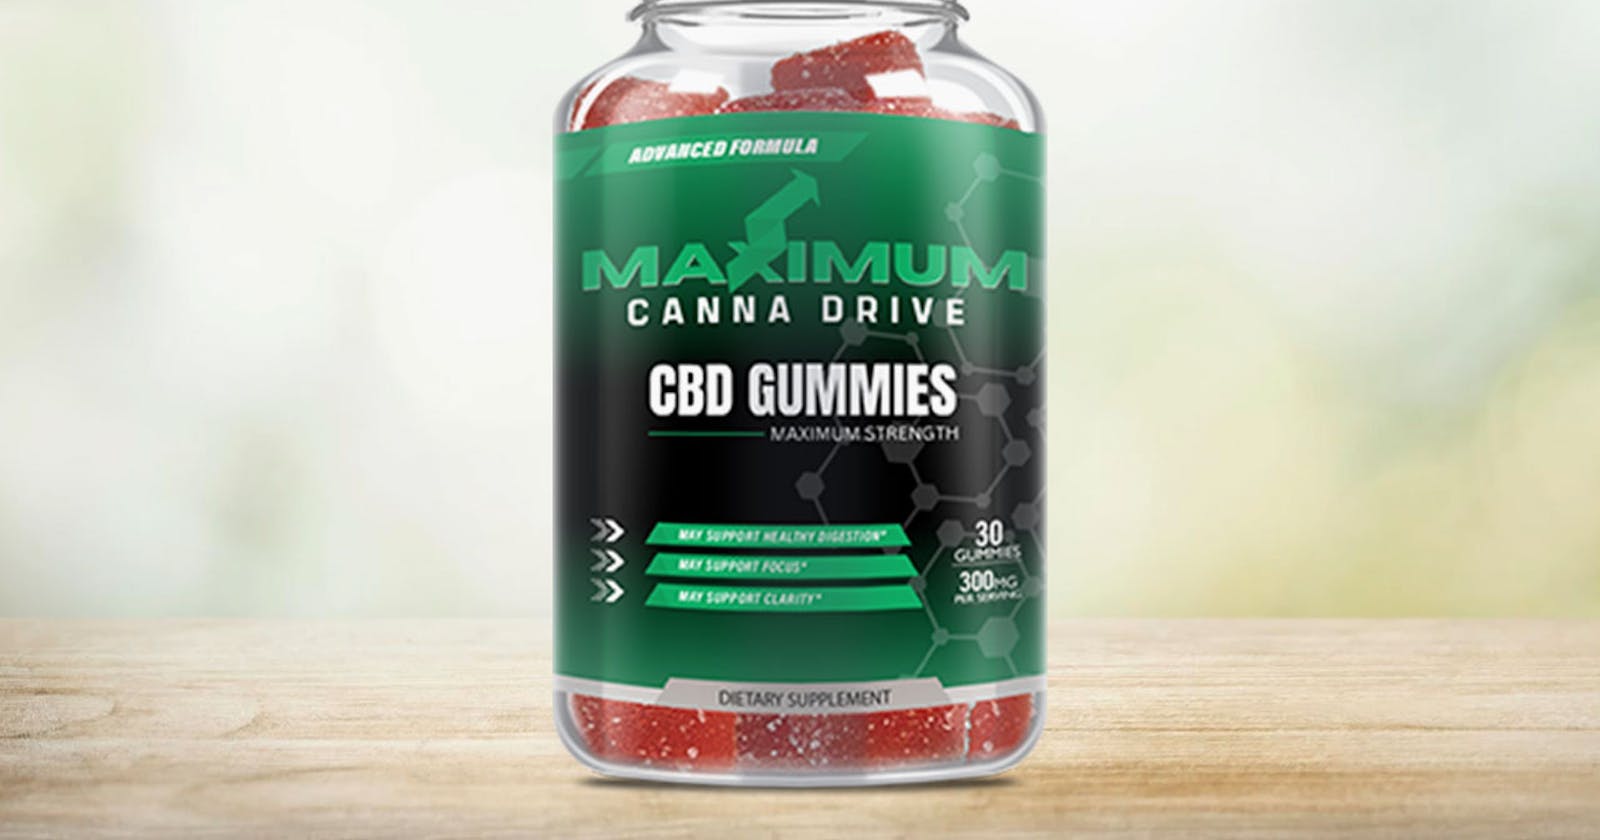 Maximum CBD Gummies – Is Maximum Canna Drive CBD Gummies ?